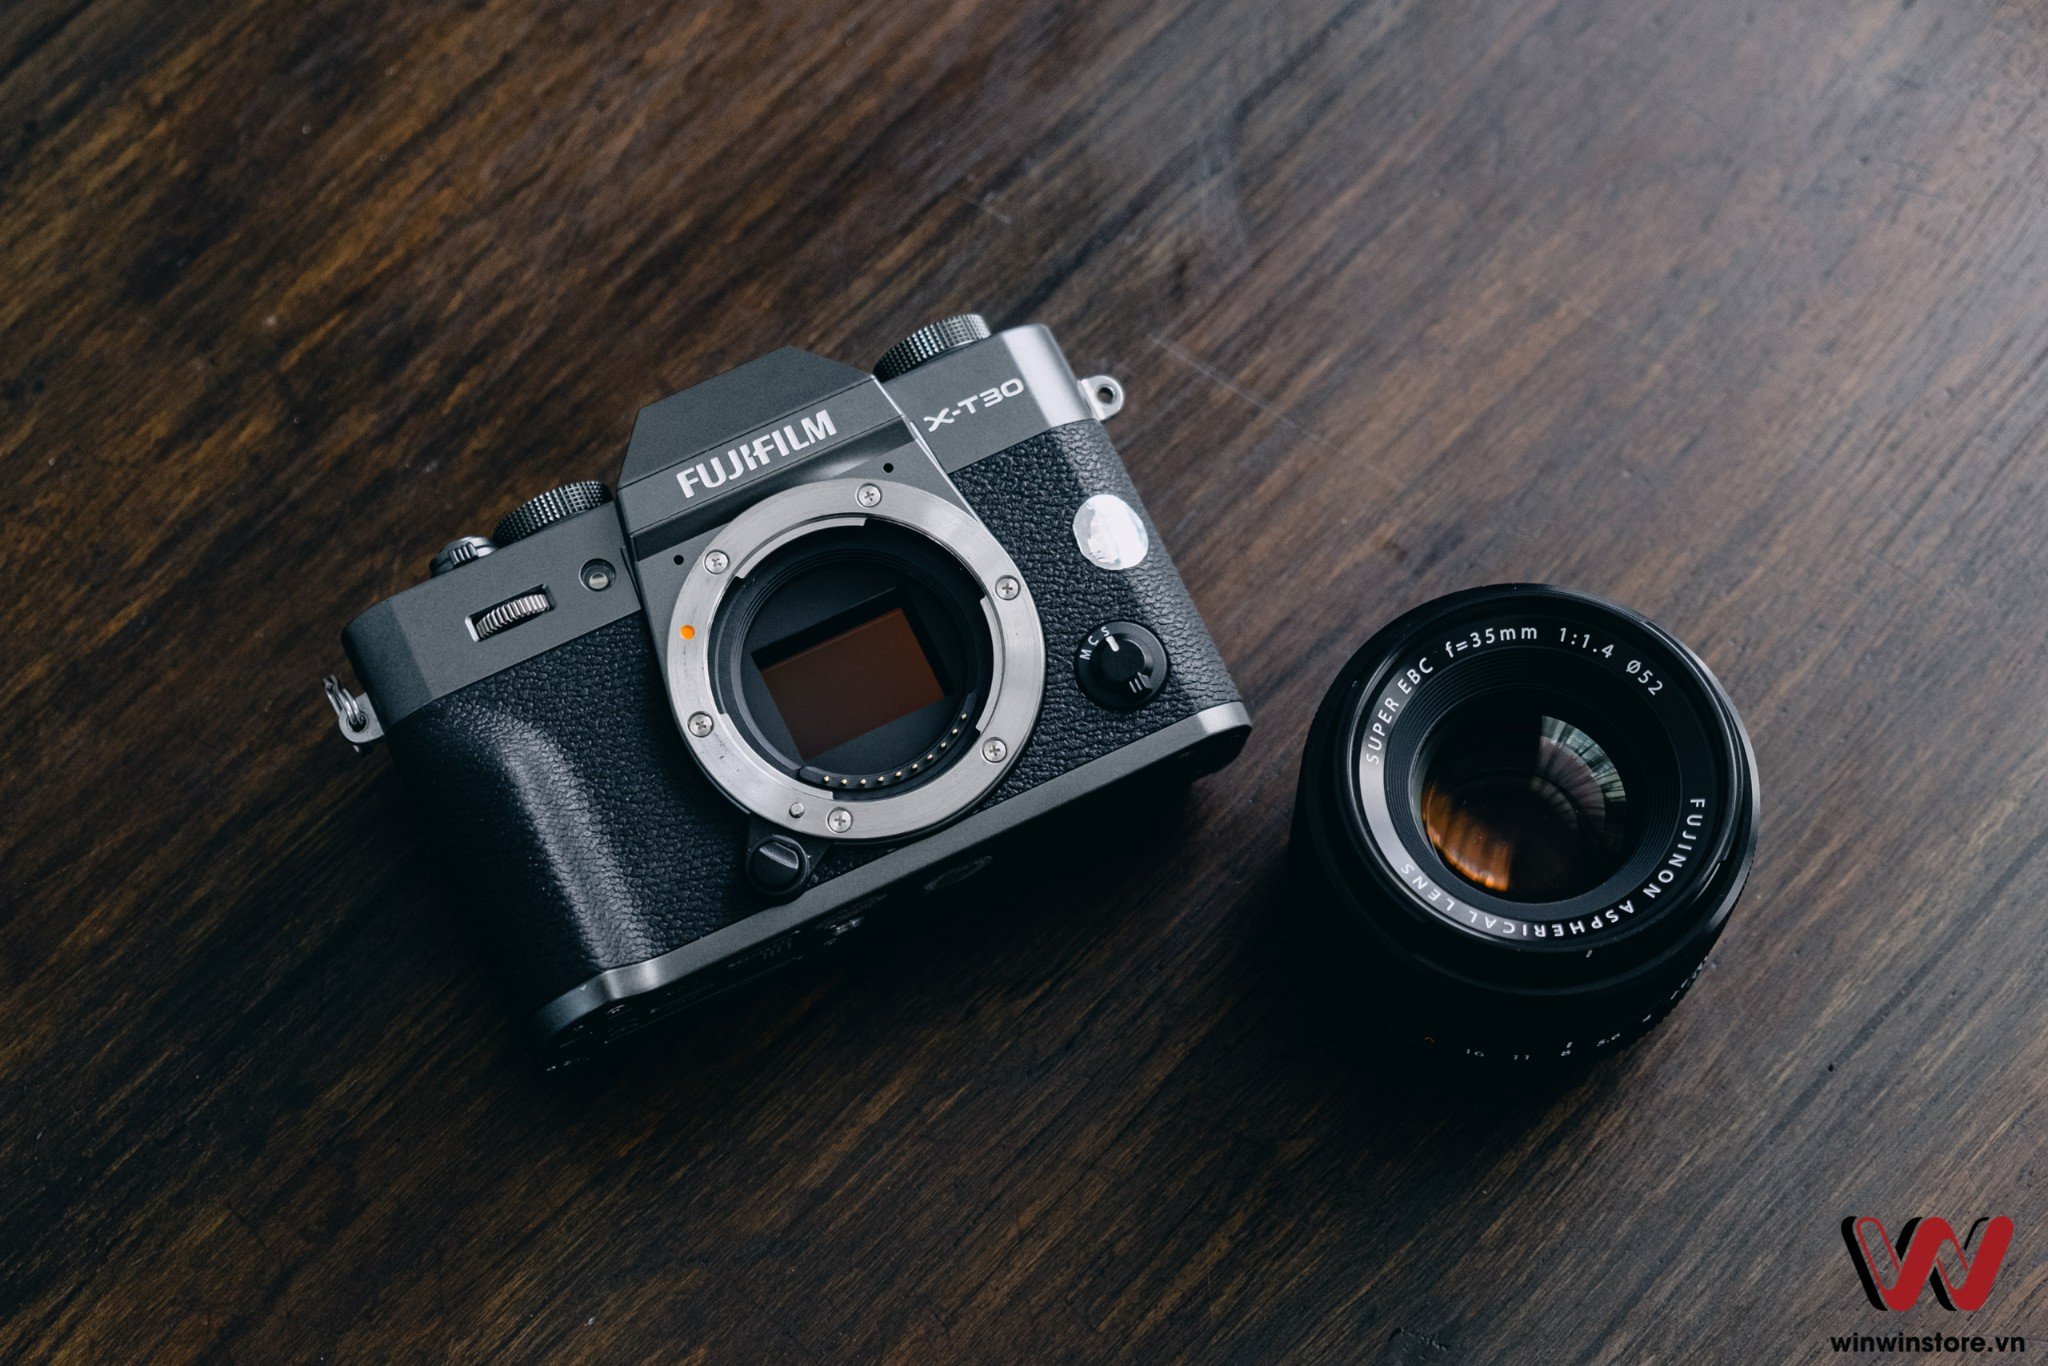 Trên tay Fujifilm X-T30 và XF 35mm F1.4, combo máy ảnh và ống kính giá dưới 30tr